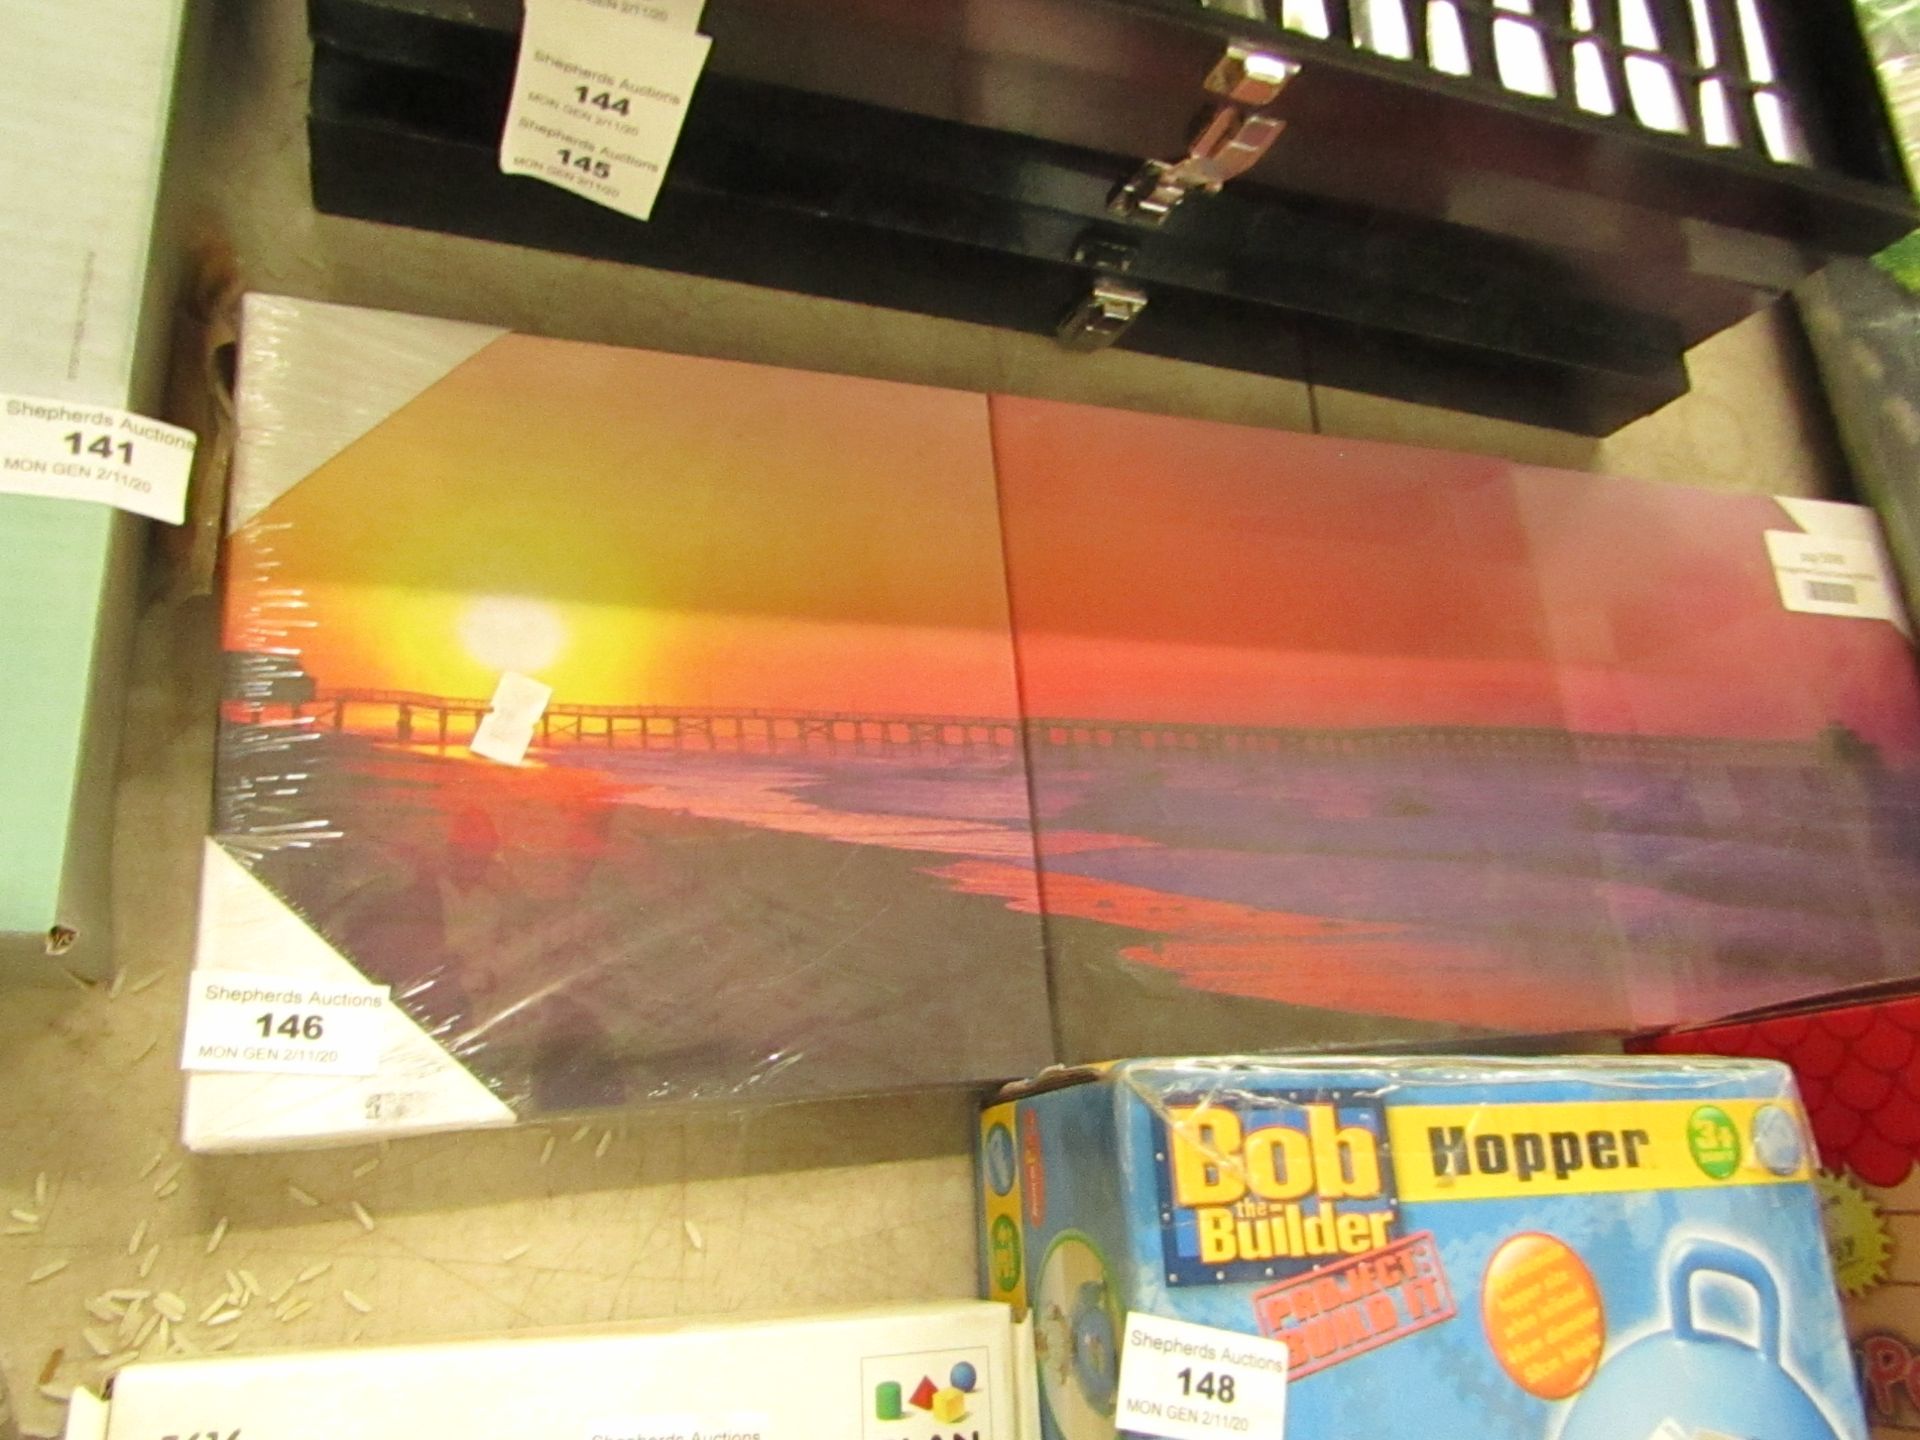 3 Bridge/Pier Sunset Canvas - 3x 20x60cm - Packaged.